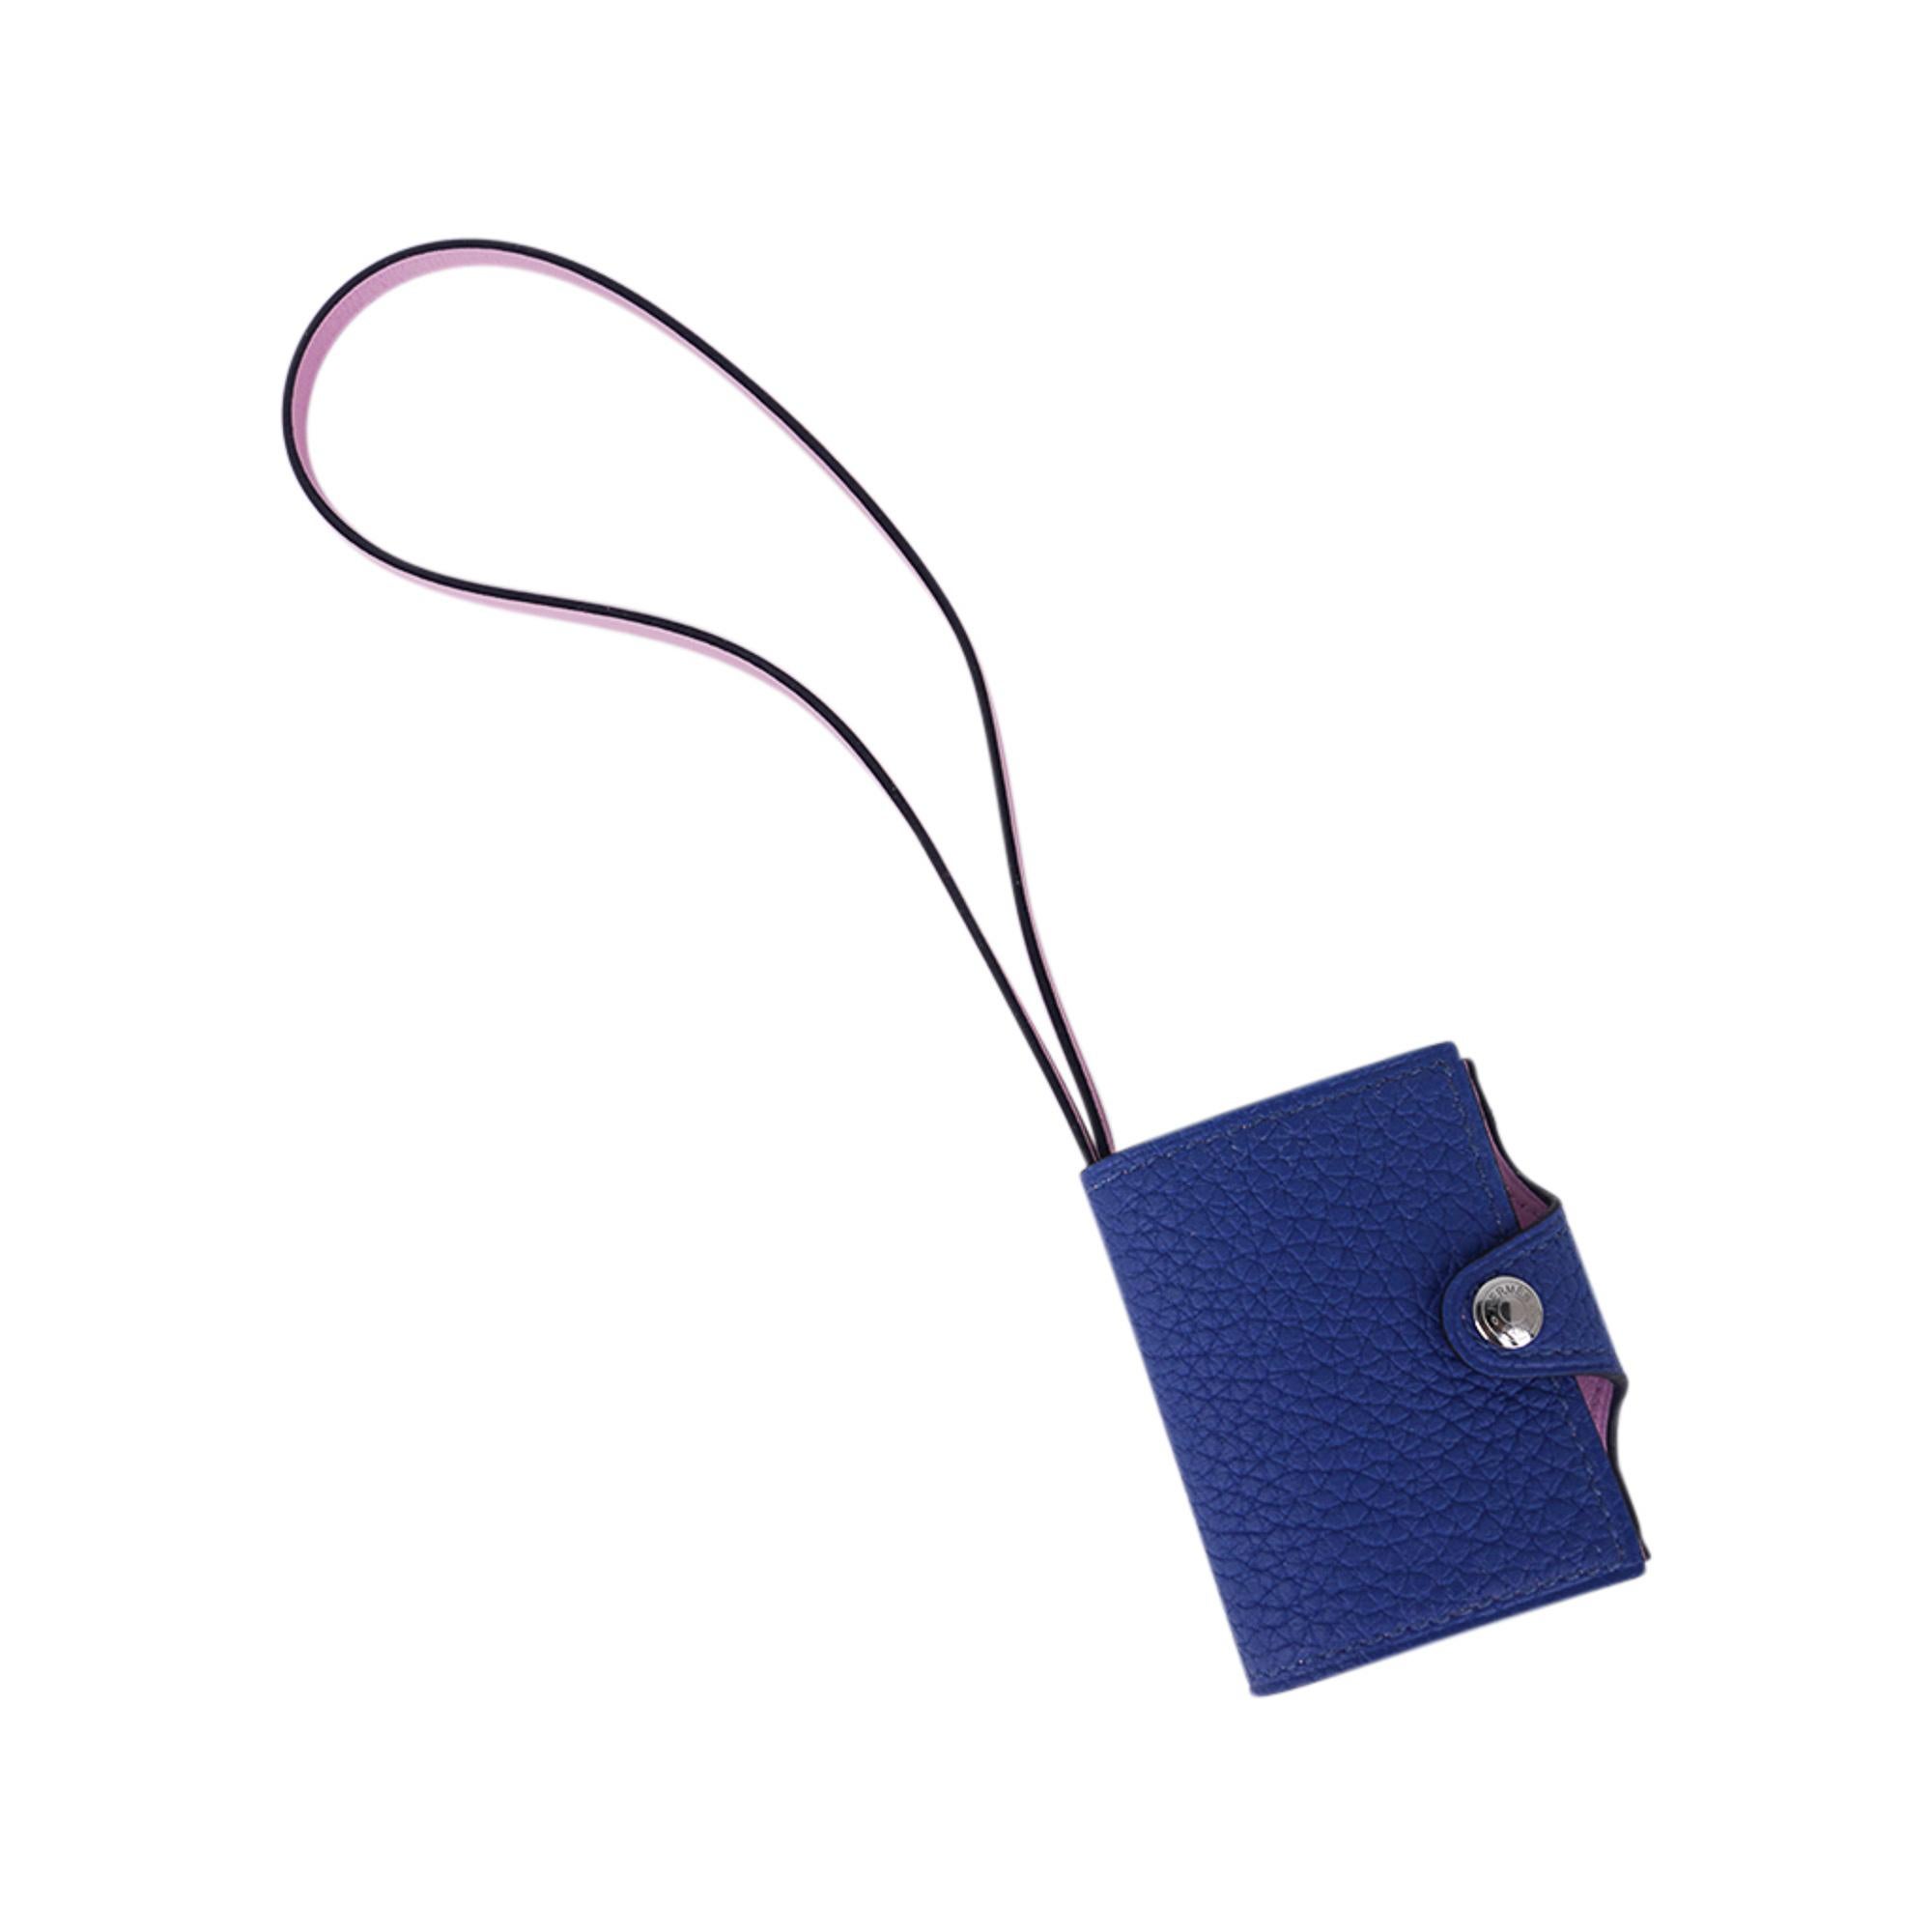 Hermes Ulysse Nano Bag Charm Blue de France / Mauve Sylvestre For Sale 6